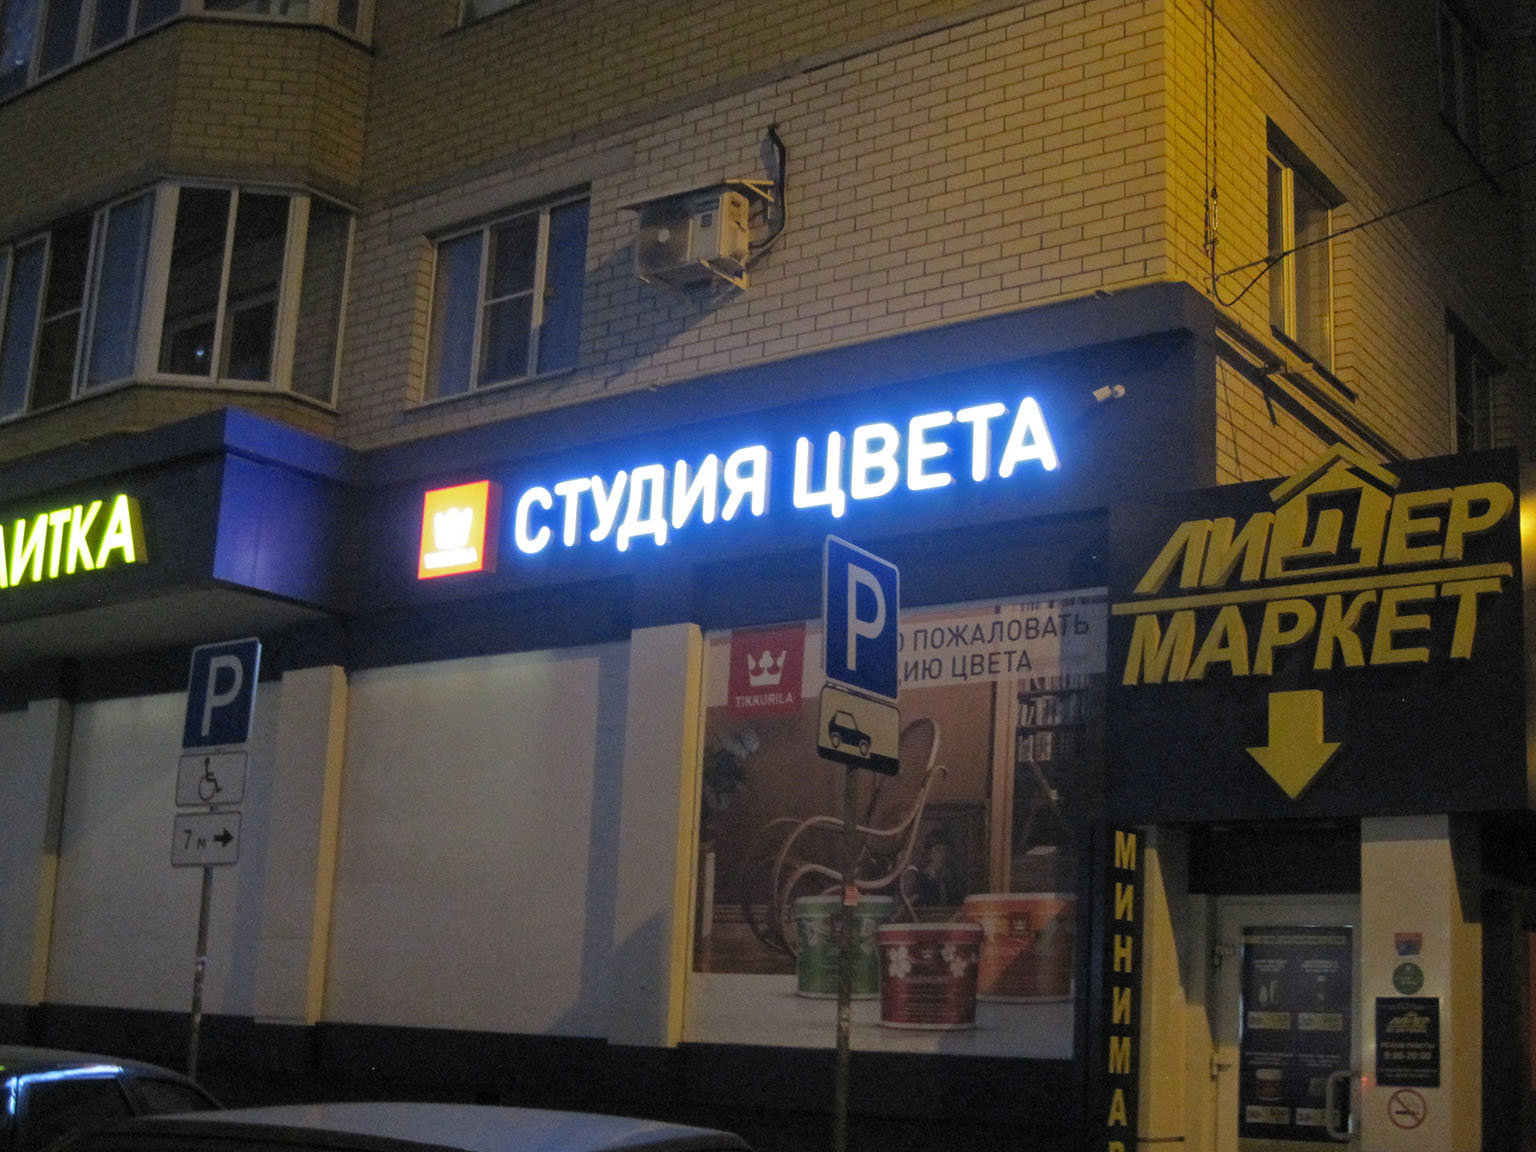 Магазин «TIKKURILA», объемные световые буквы и логотип